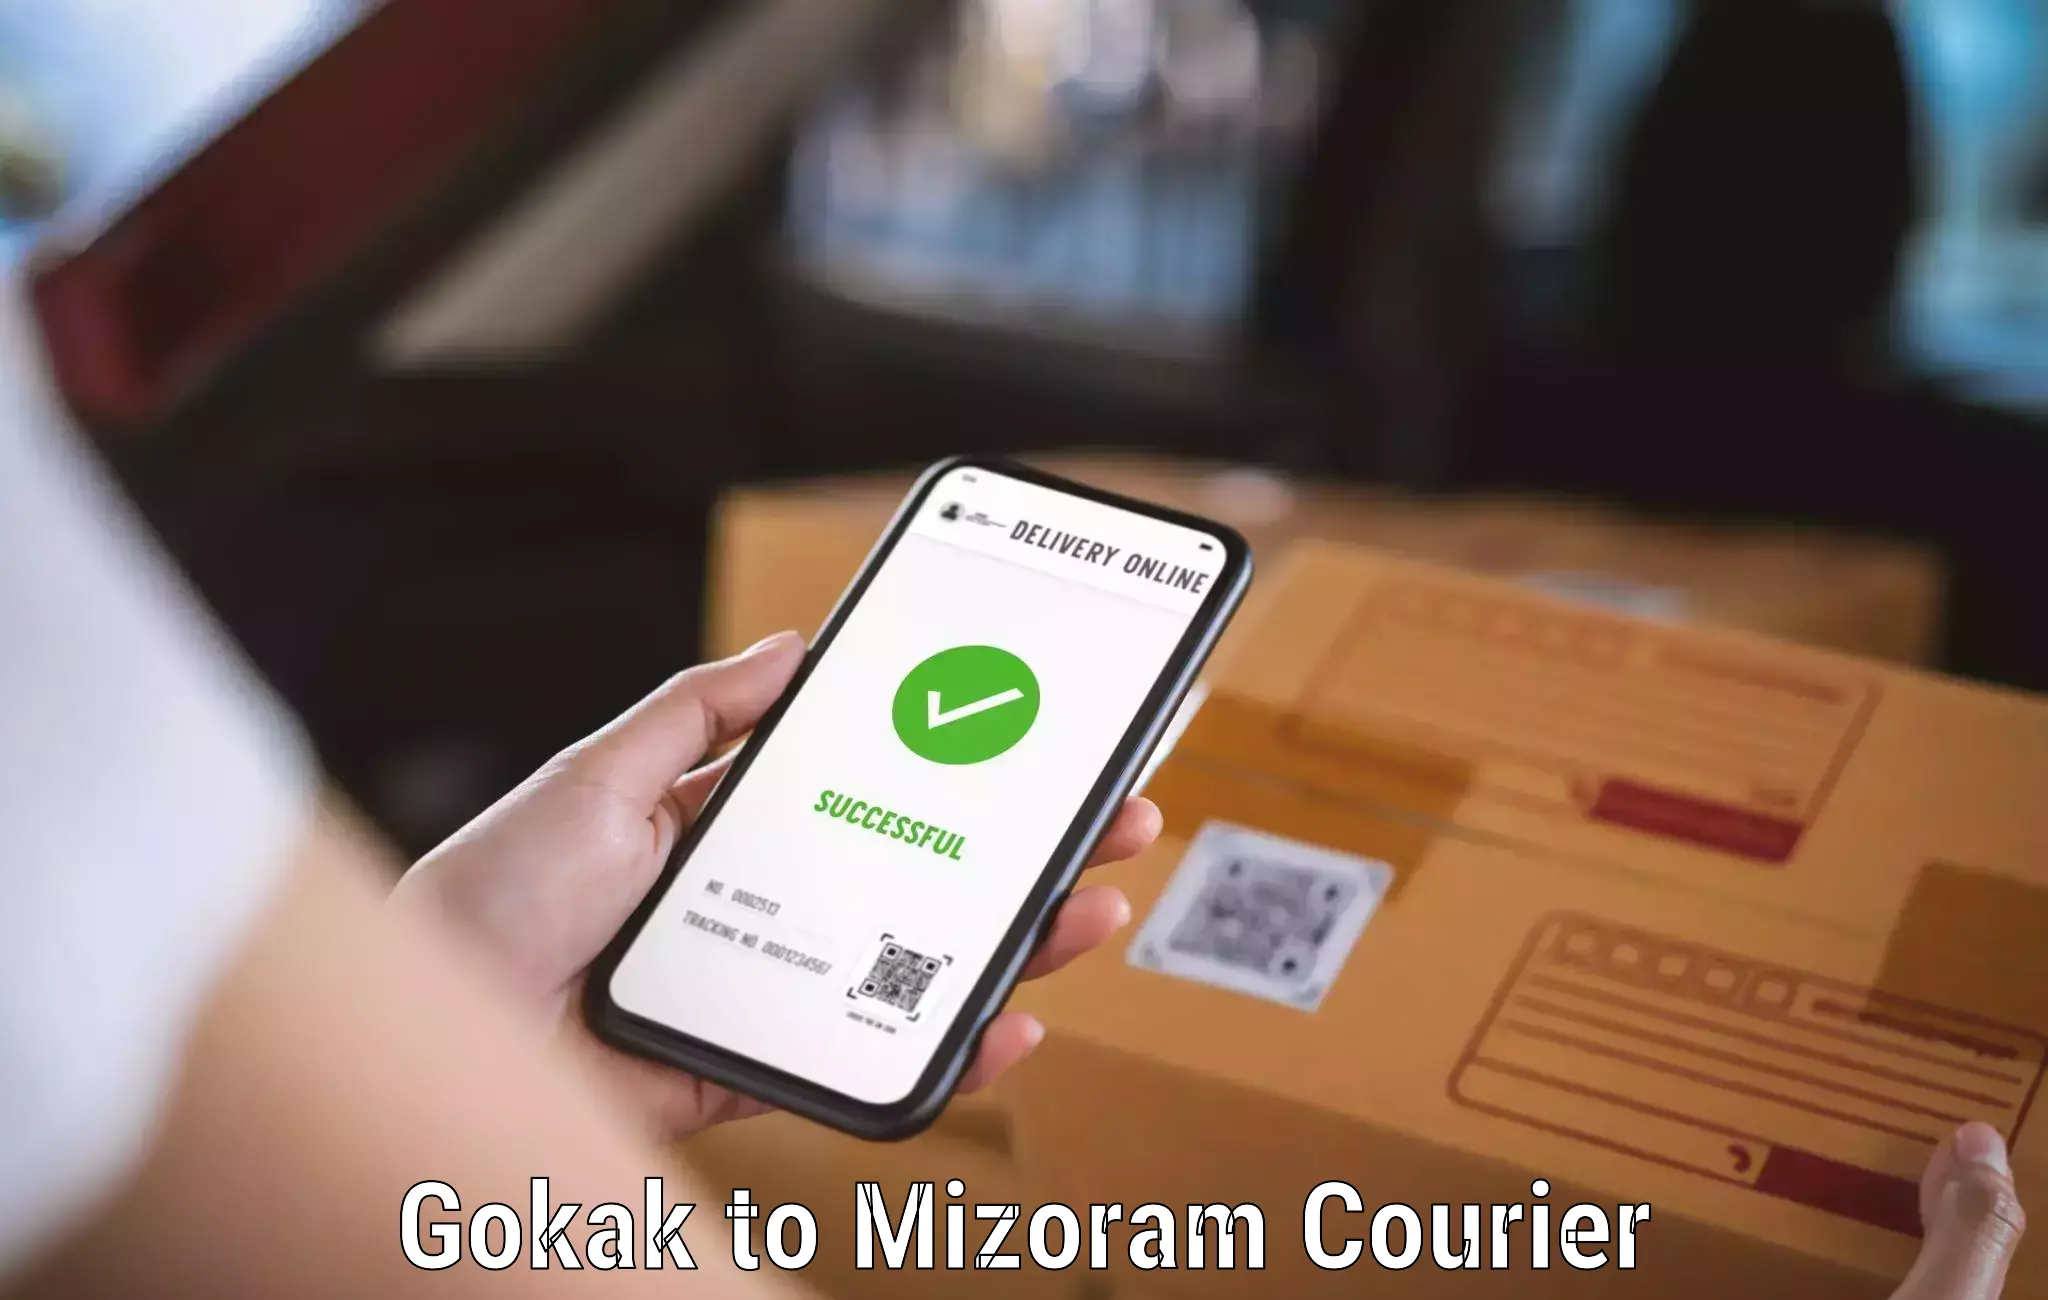 Customer-oriented courier services Gokak to Mizoram